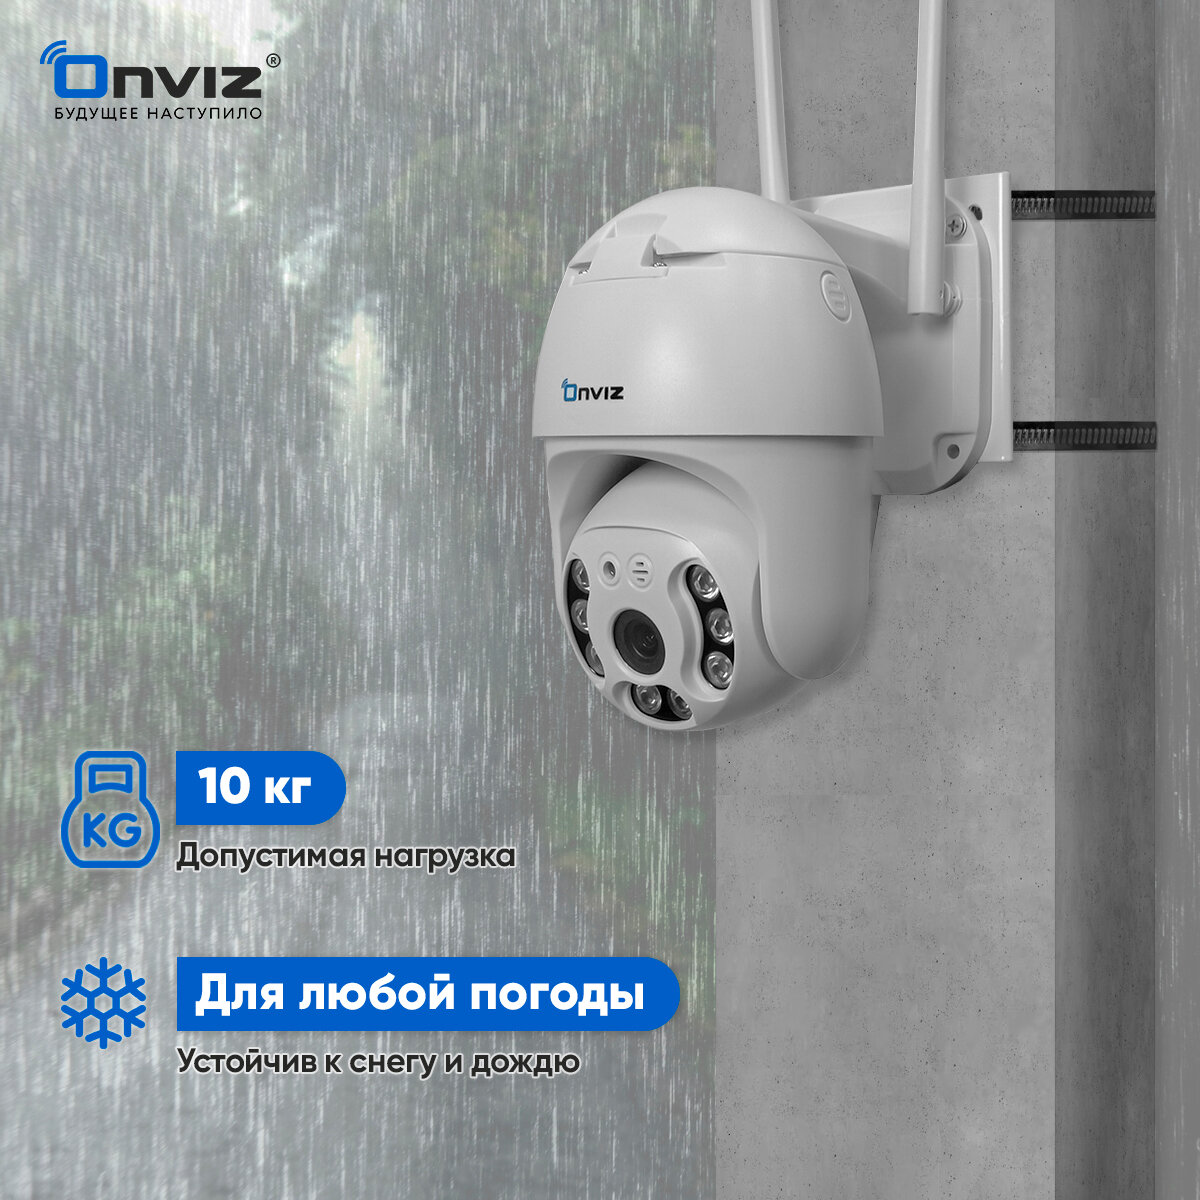 Кронштейн для крепления камеры видеонаблюдения Onviz / крепление камеры видеонаблюдения на столб / хомут на столб 200 мм